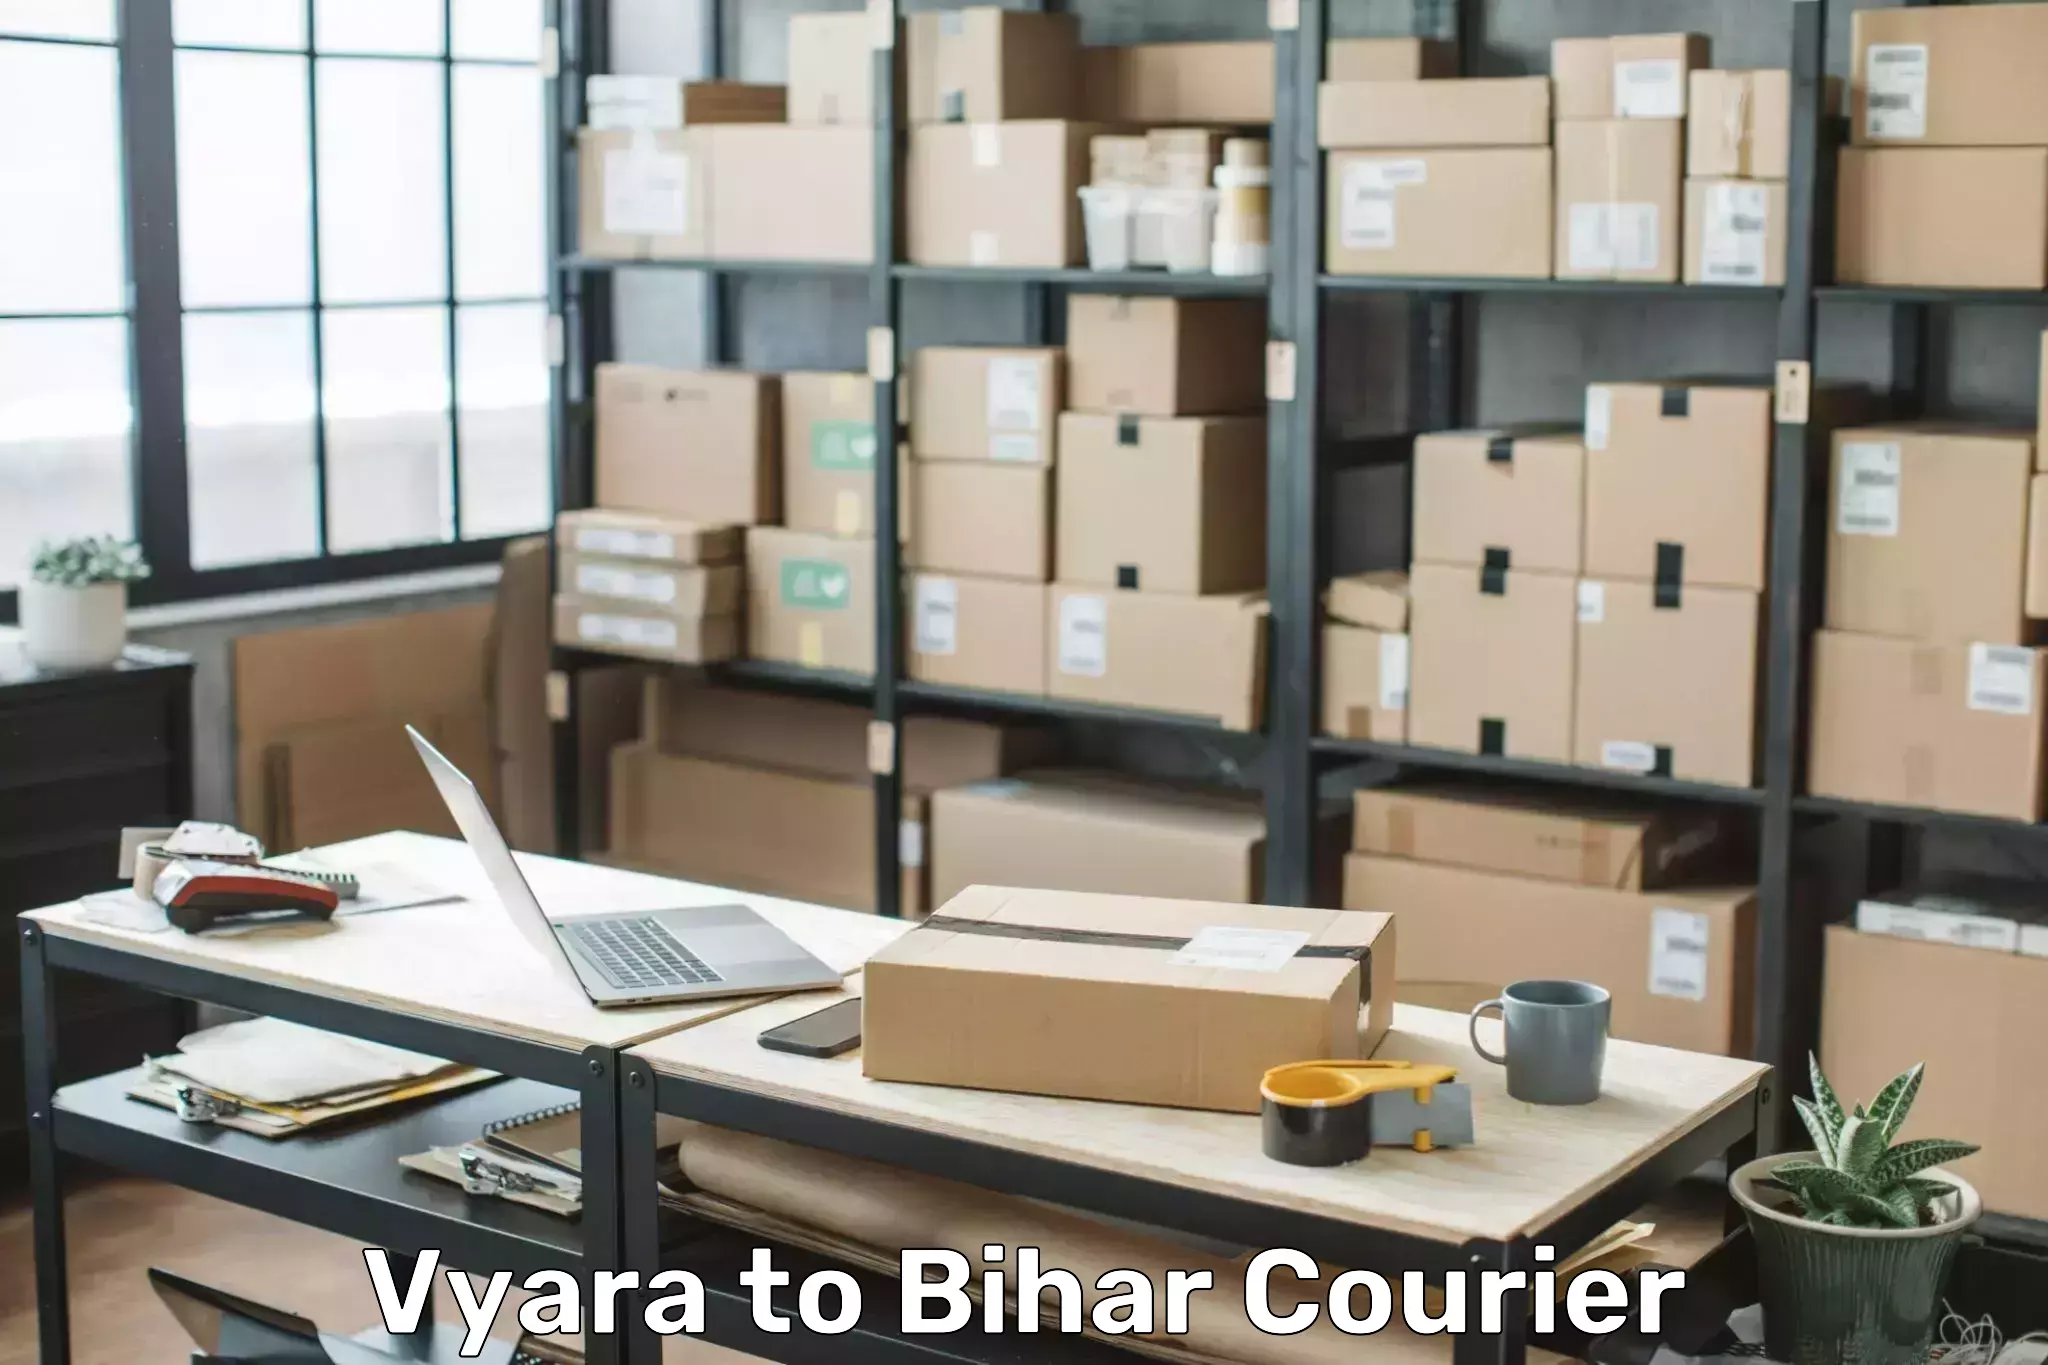 Door-to-door baggage service in Vyara to Bihar